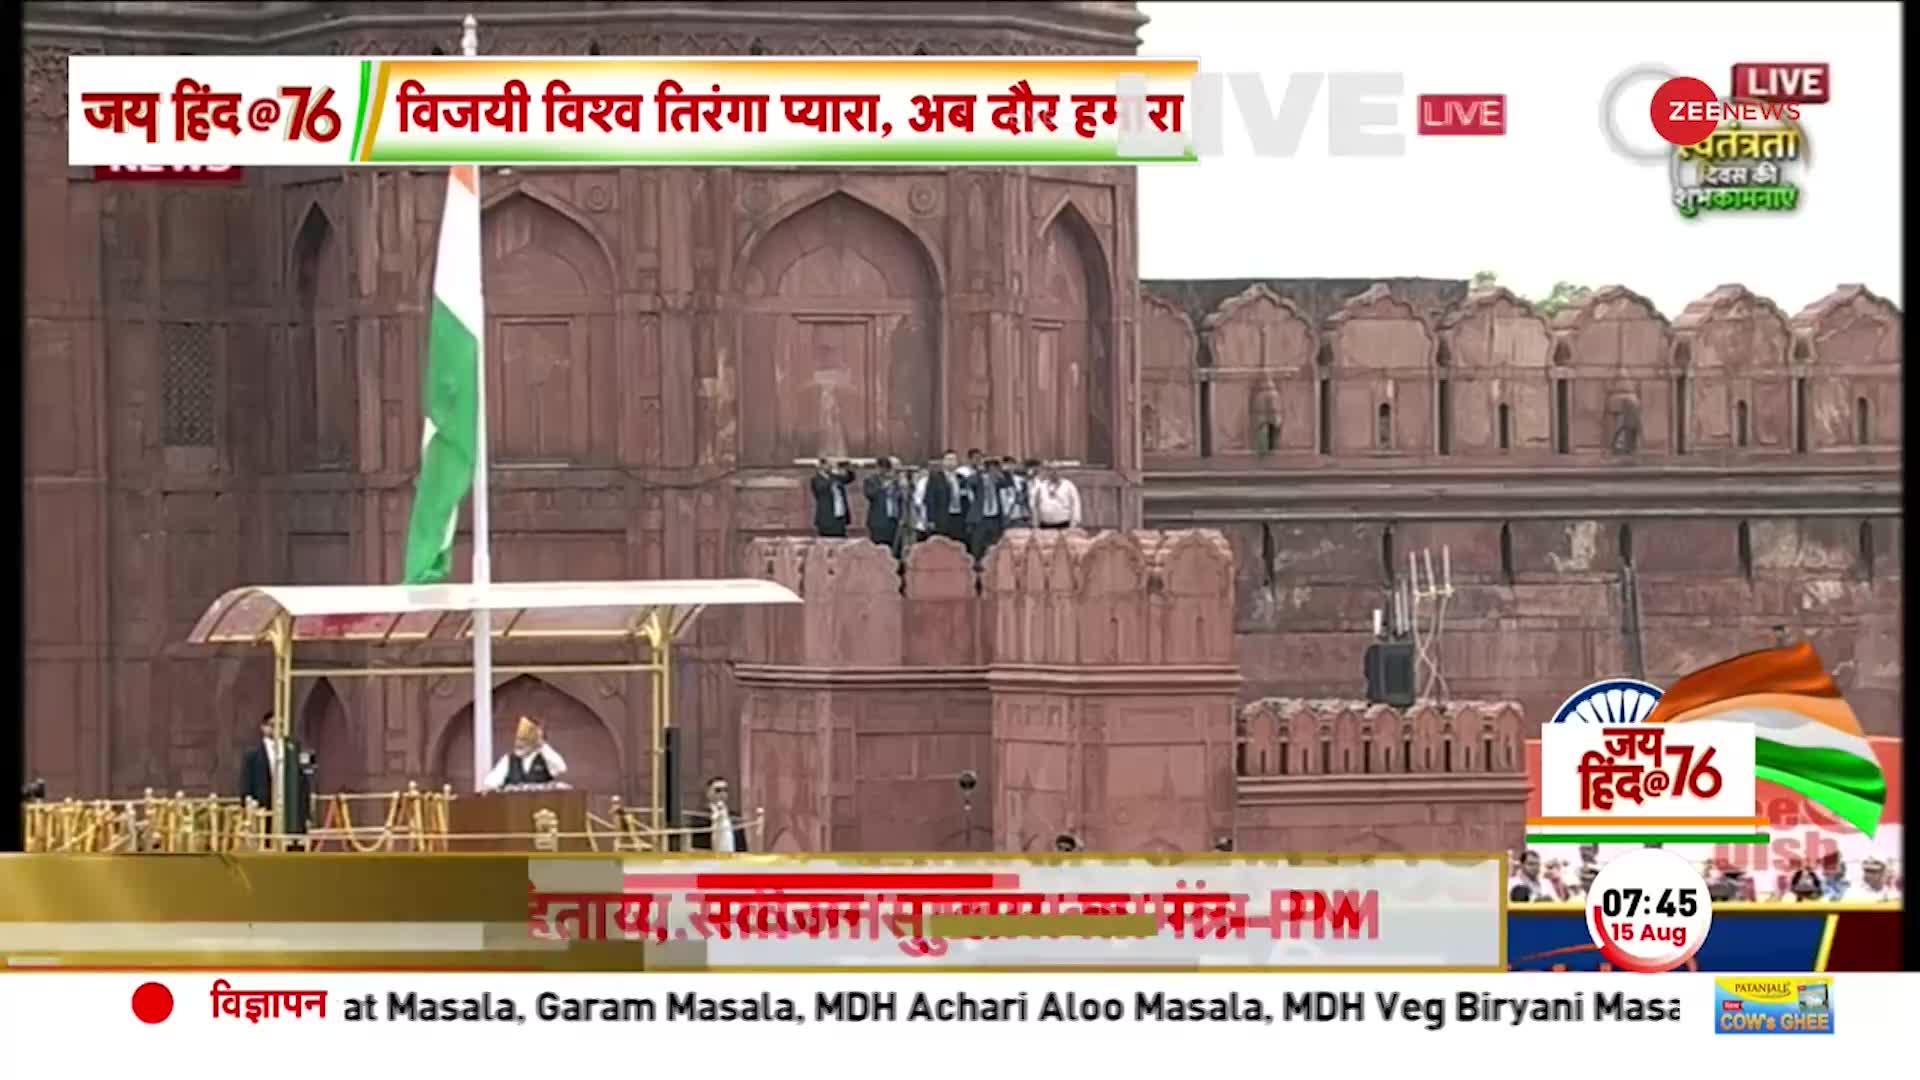 PM Modi LIVE: Independence Day पर देश के युवाओं को मोदी का संदेश, Digital India पर कही बड़ी बात!